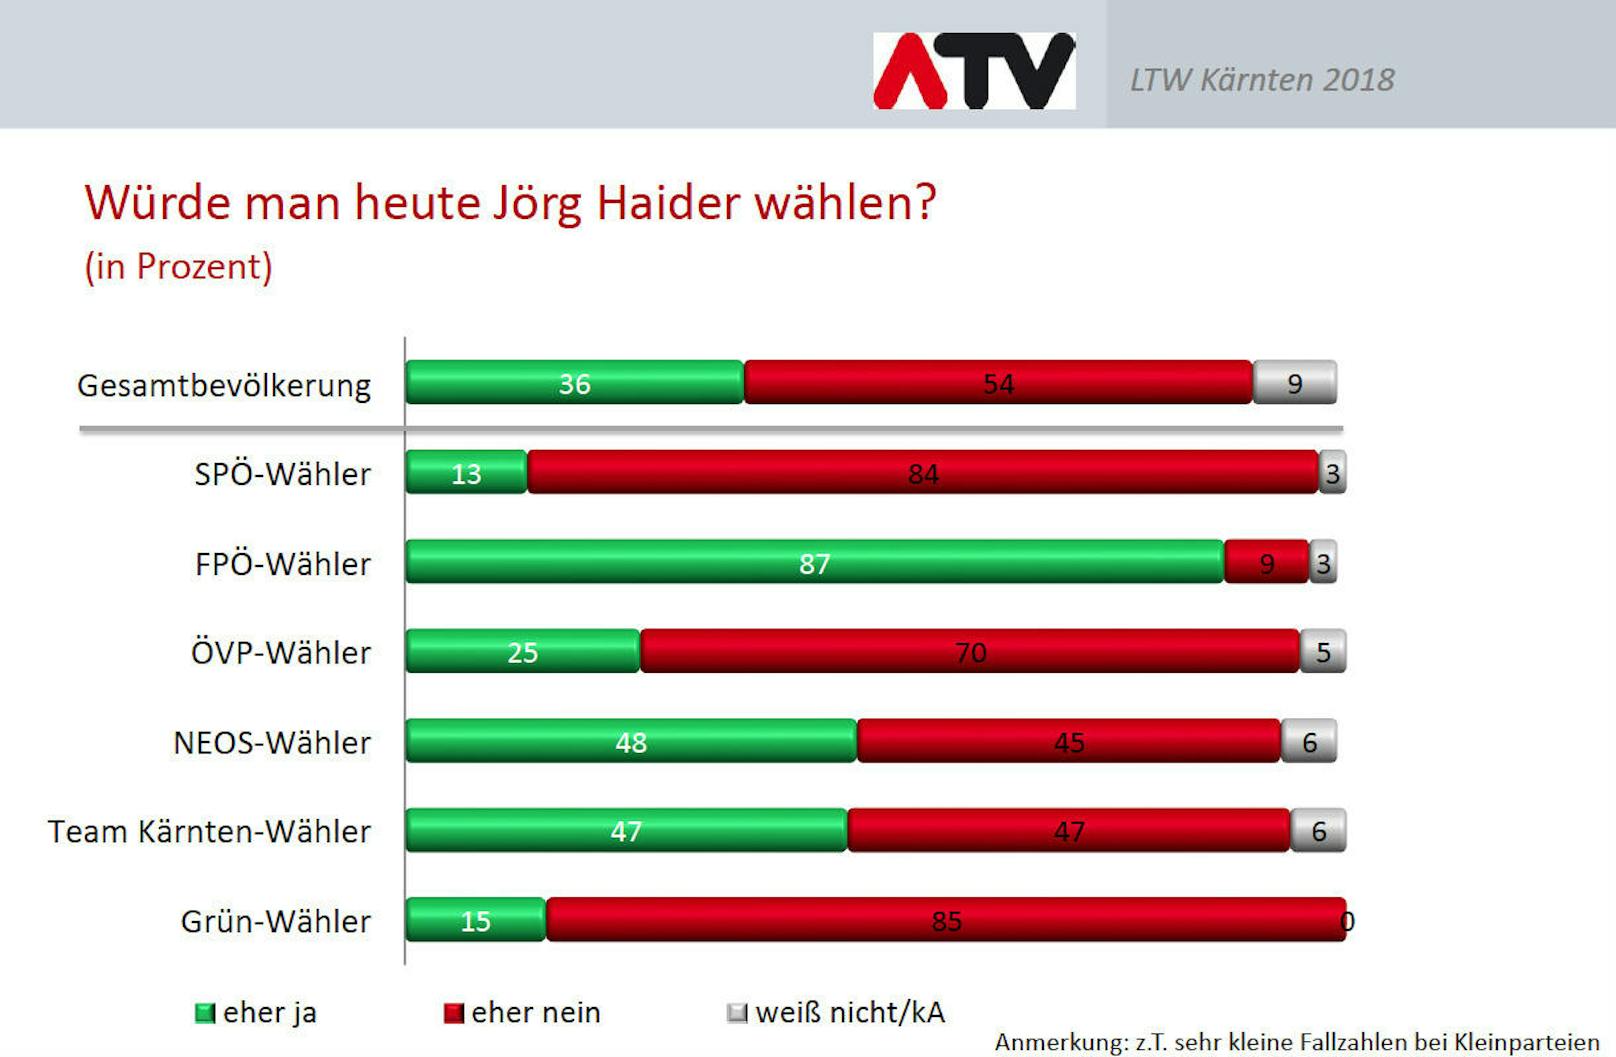 Bei den FPÖ-Wählern steht Haider noch immer hoch im Kurs.